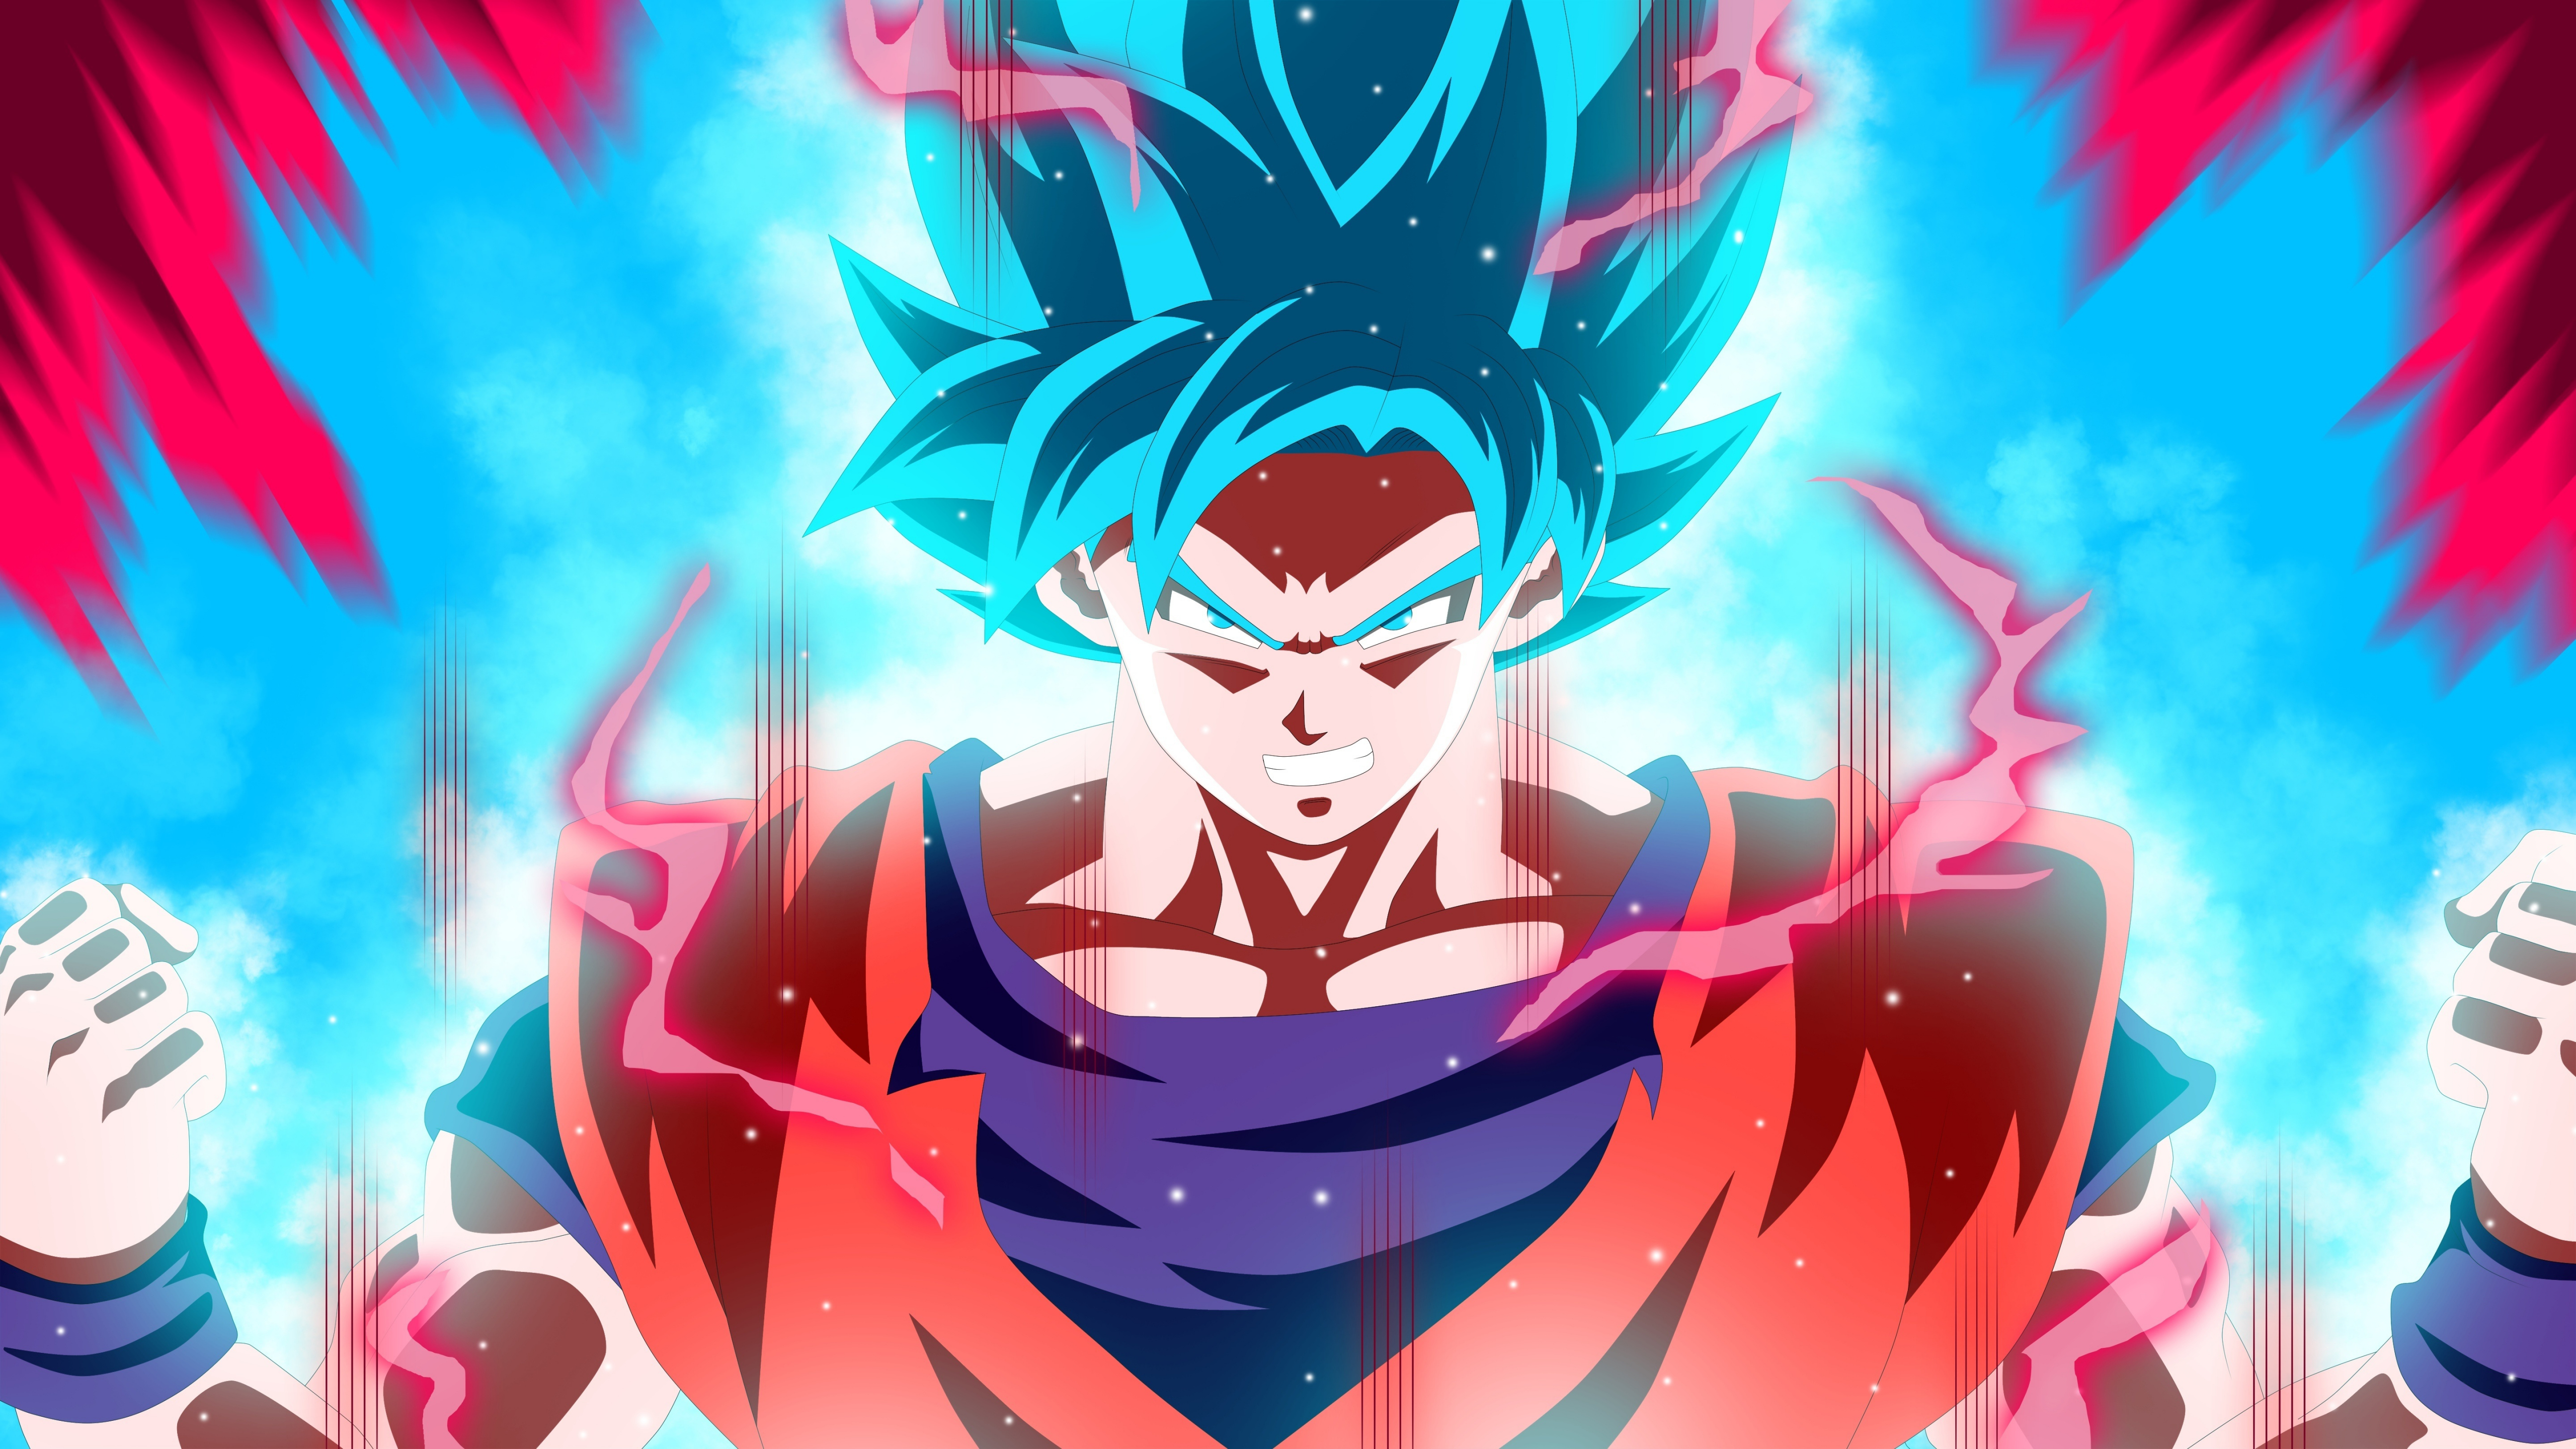 Download 5120x2880 Wallpaper Son Goku Full Energy Anime 5k